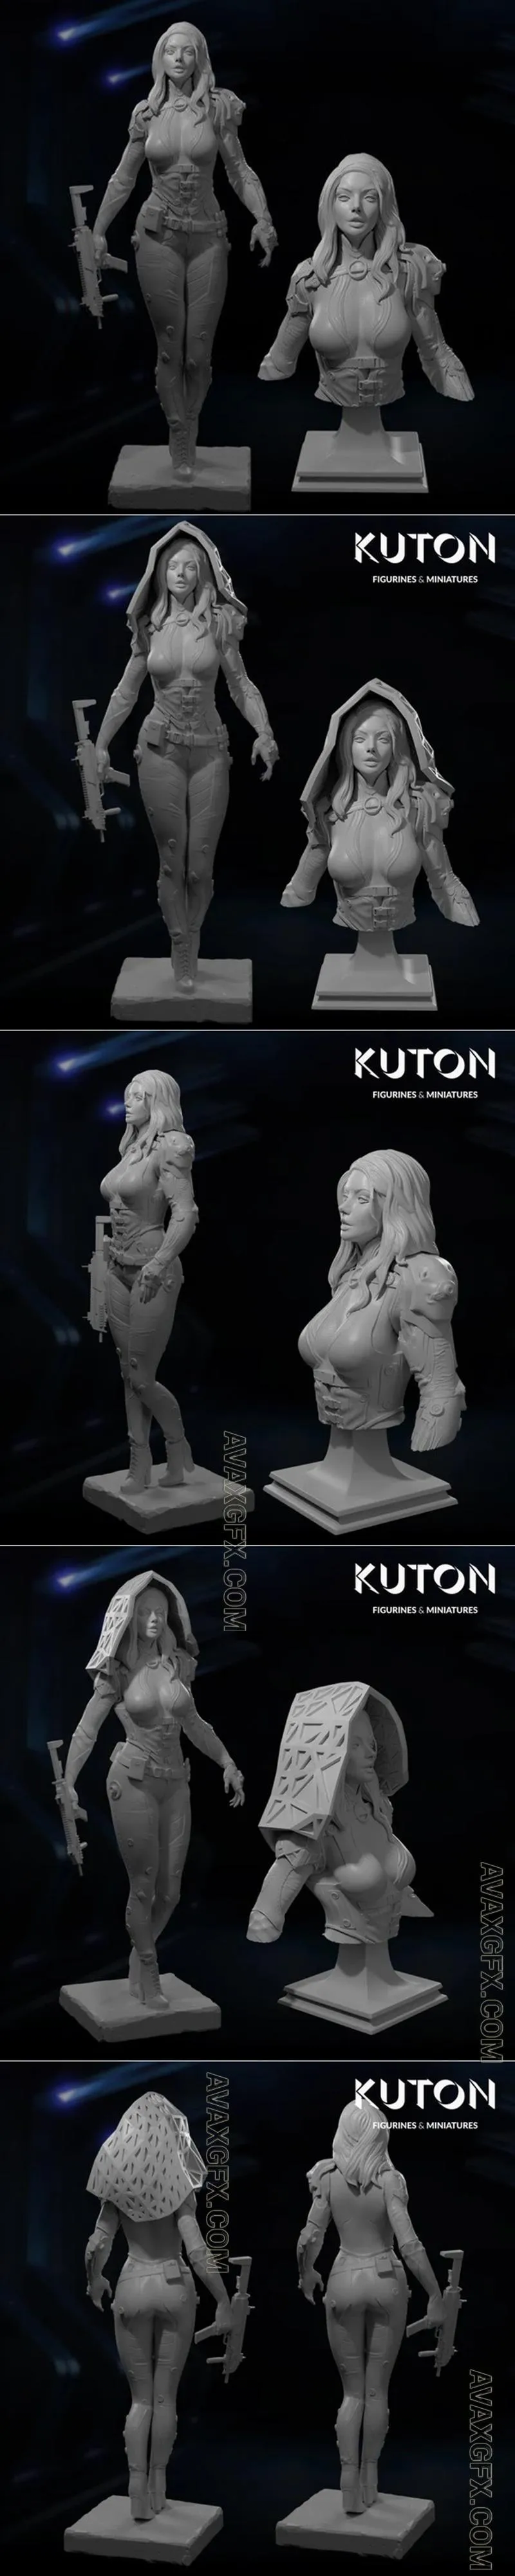 Kuton Figurines - Alicia - STL 3D Model